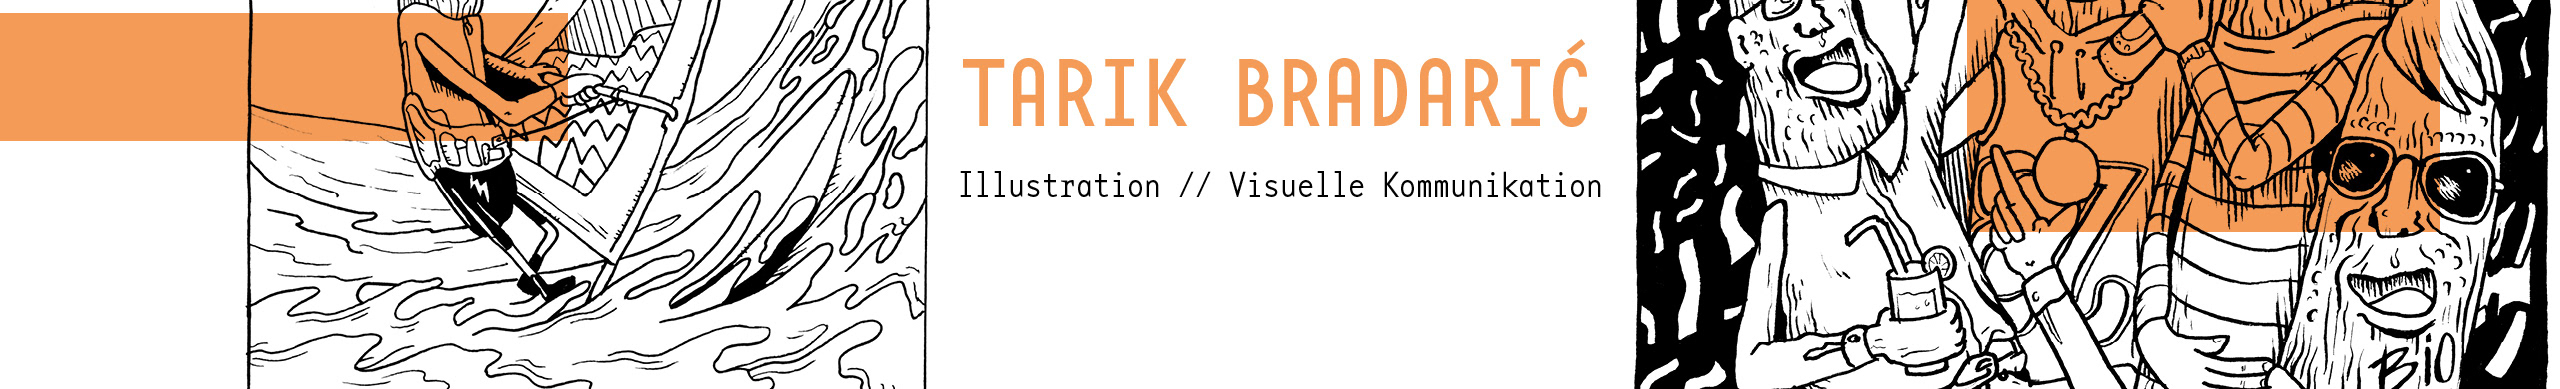 Tarik Bradaric's profile banner